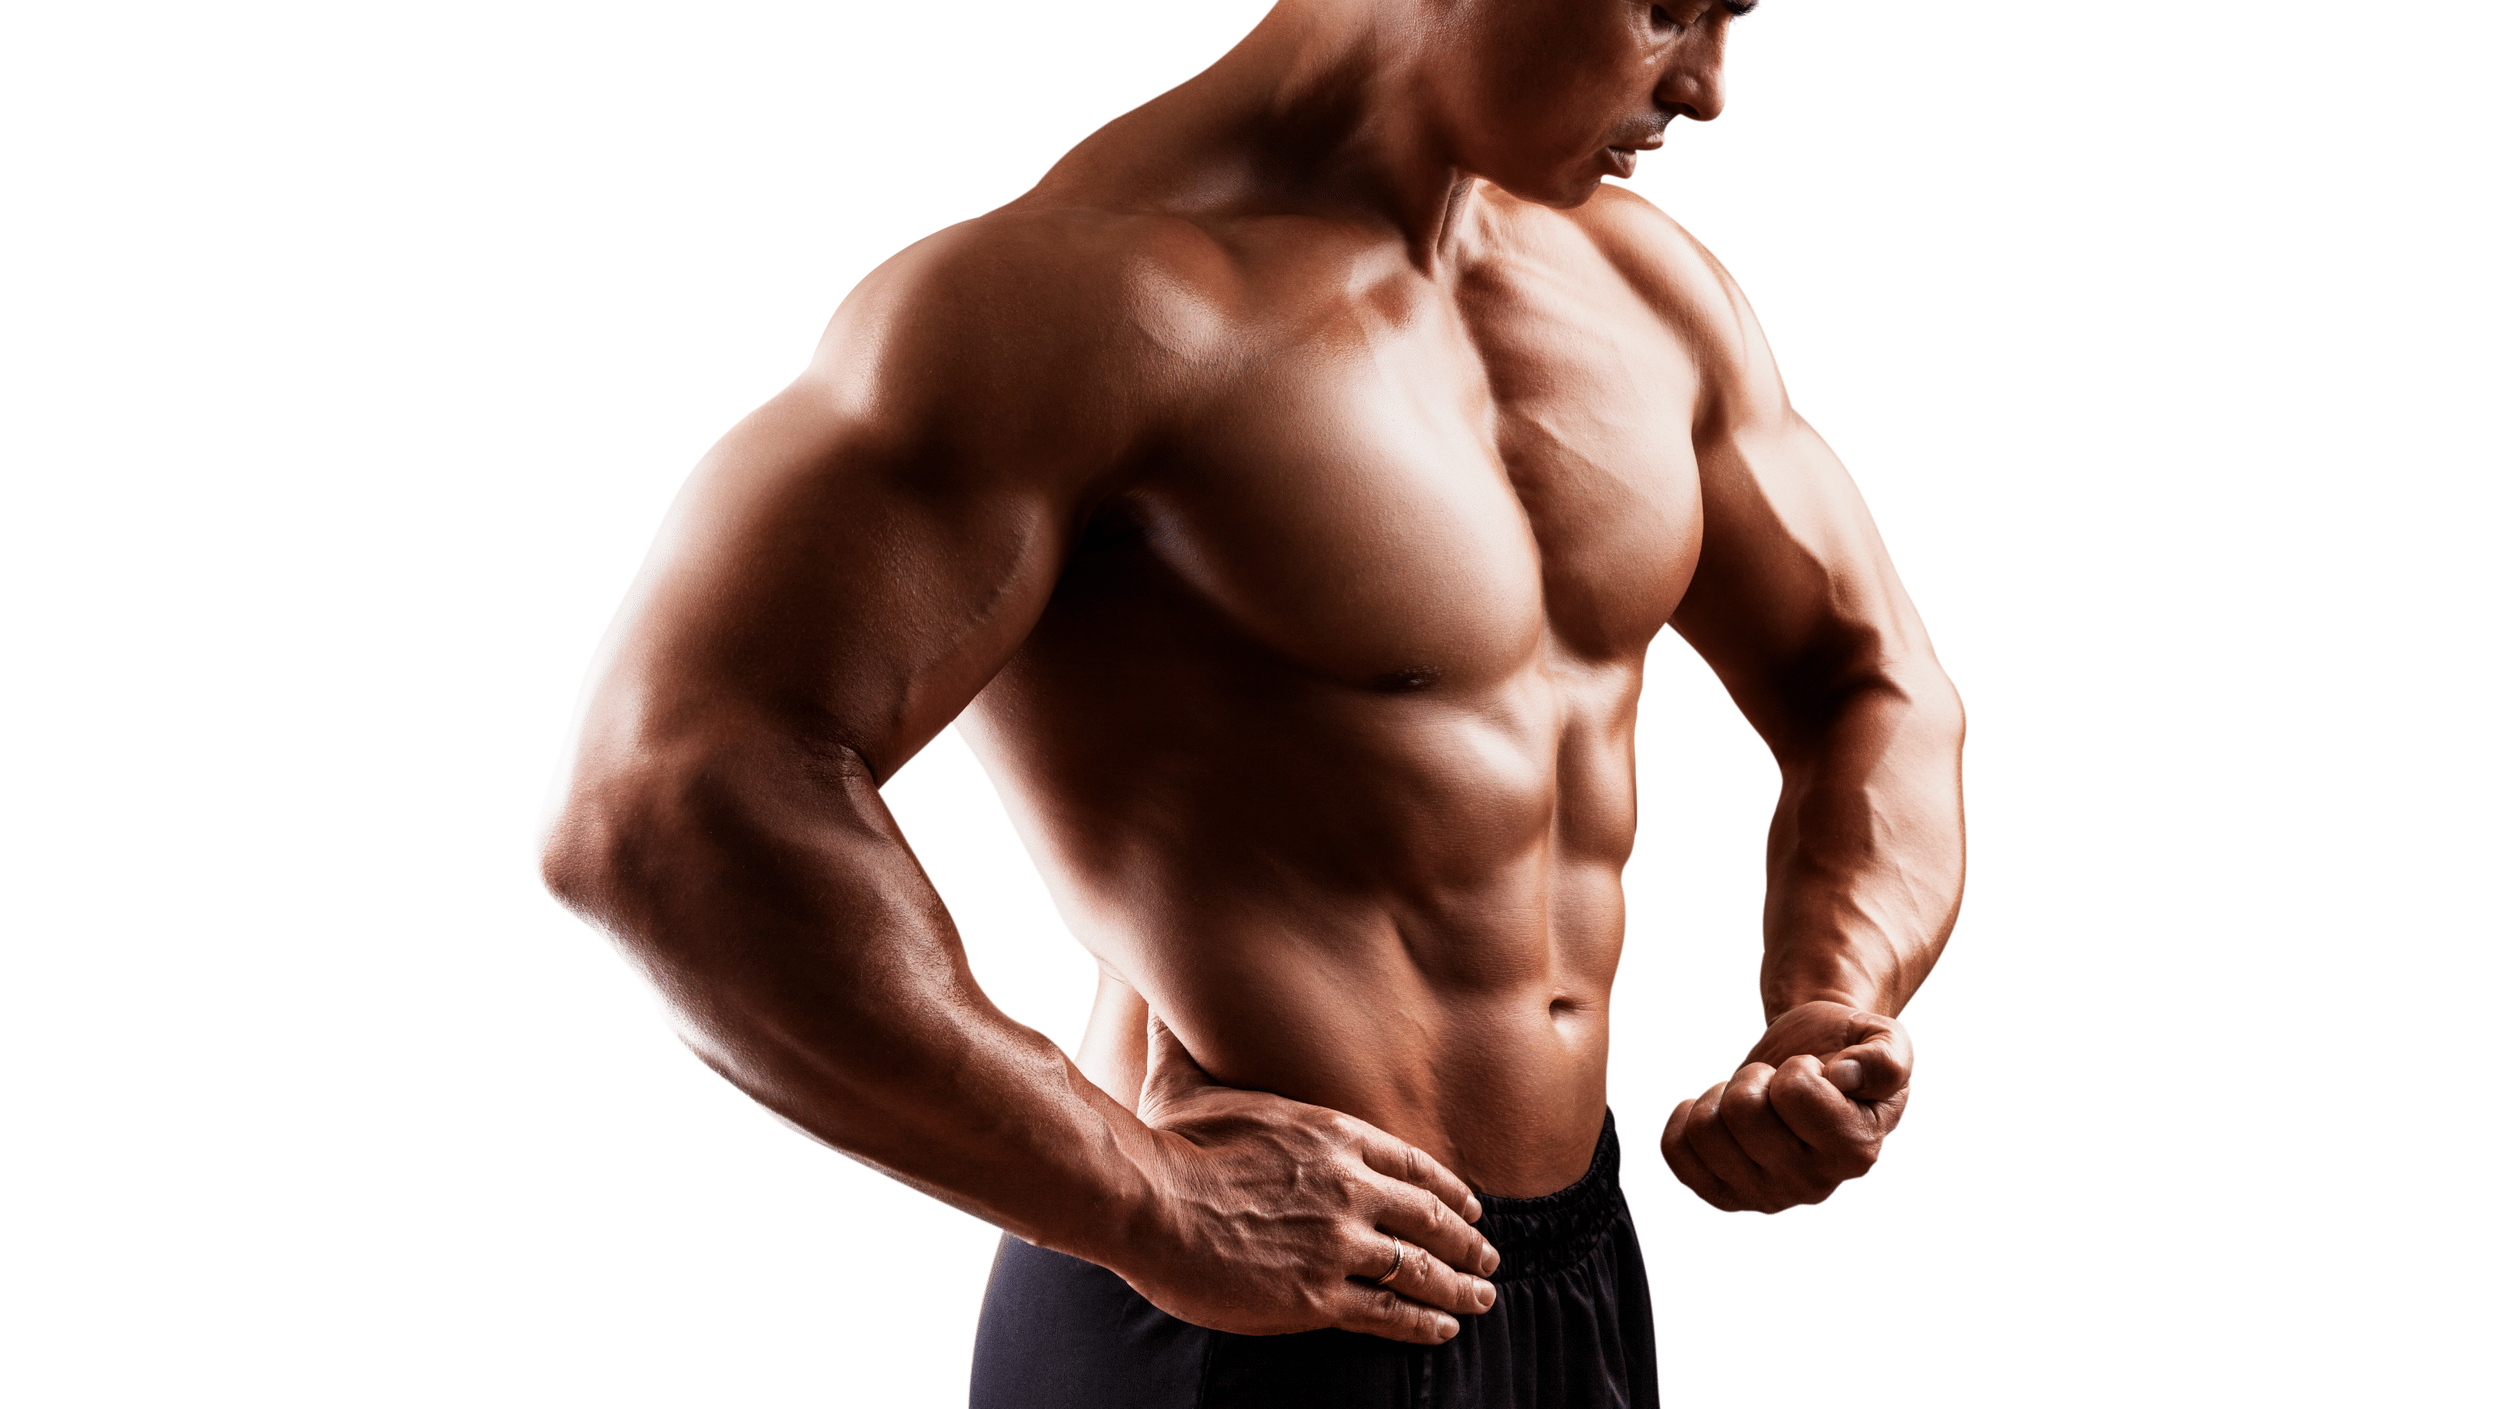 A photo of a muscular man.